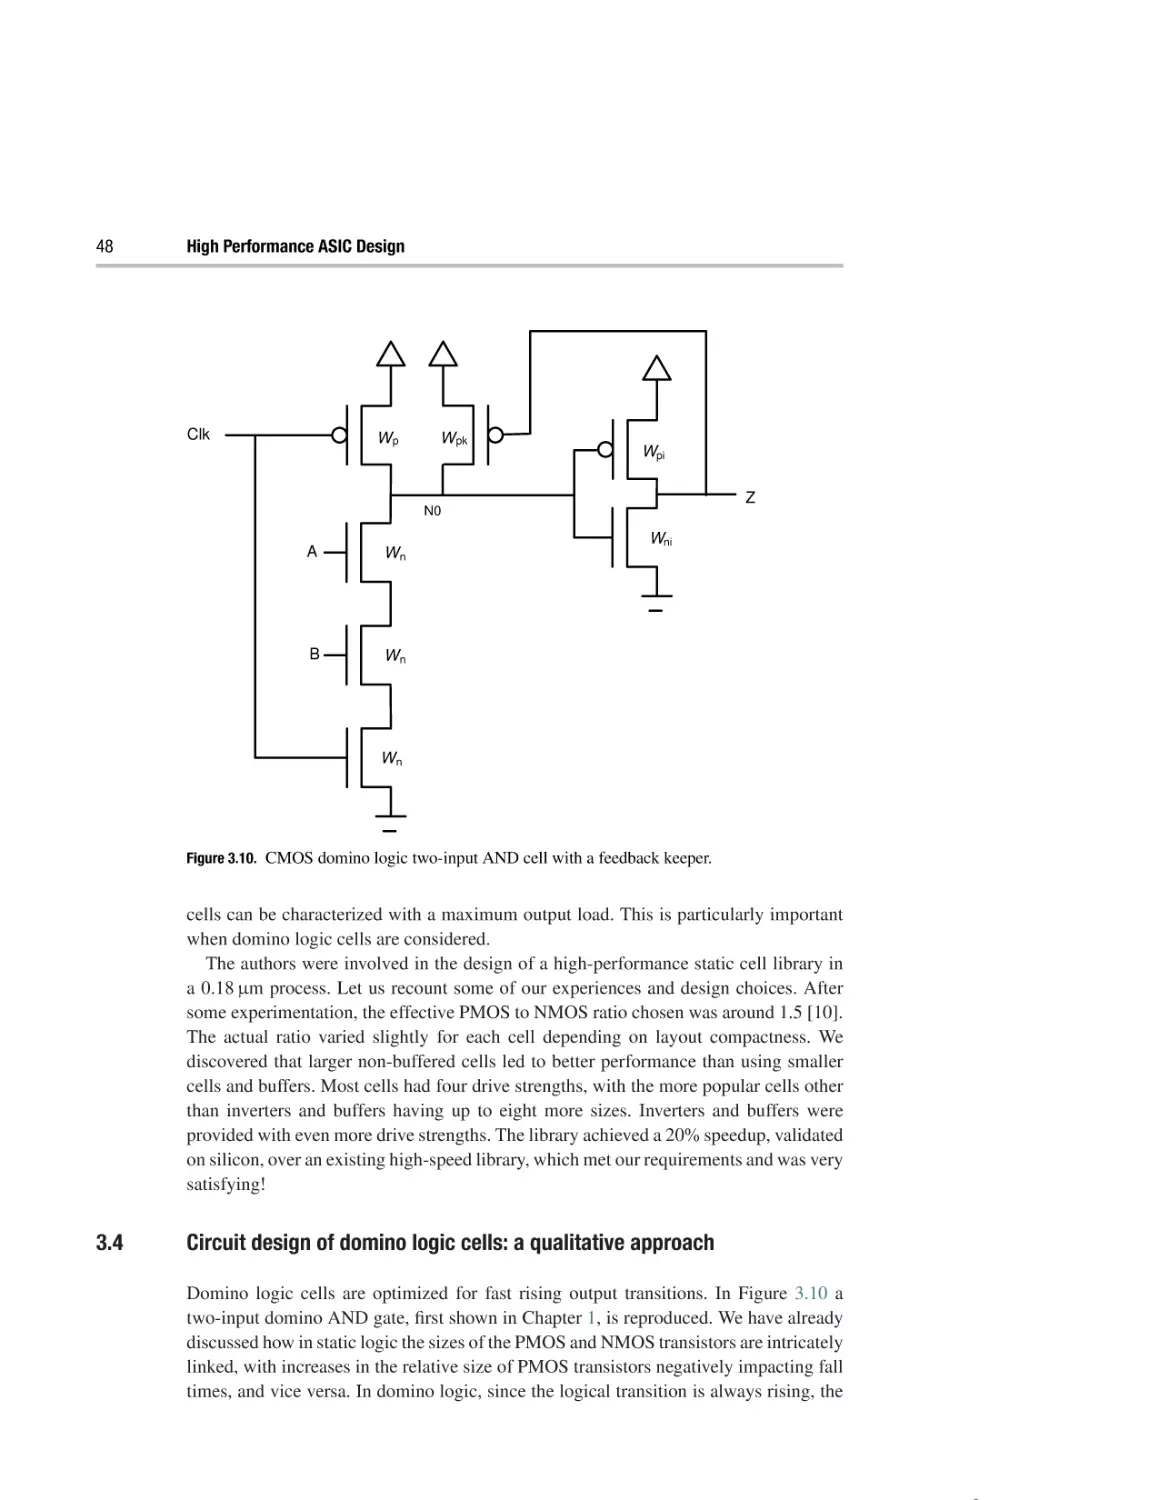 3.4 Circuit design of domino logic cells